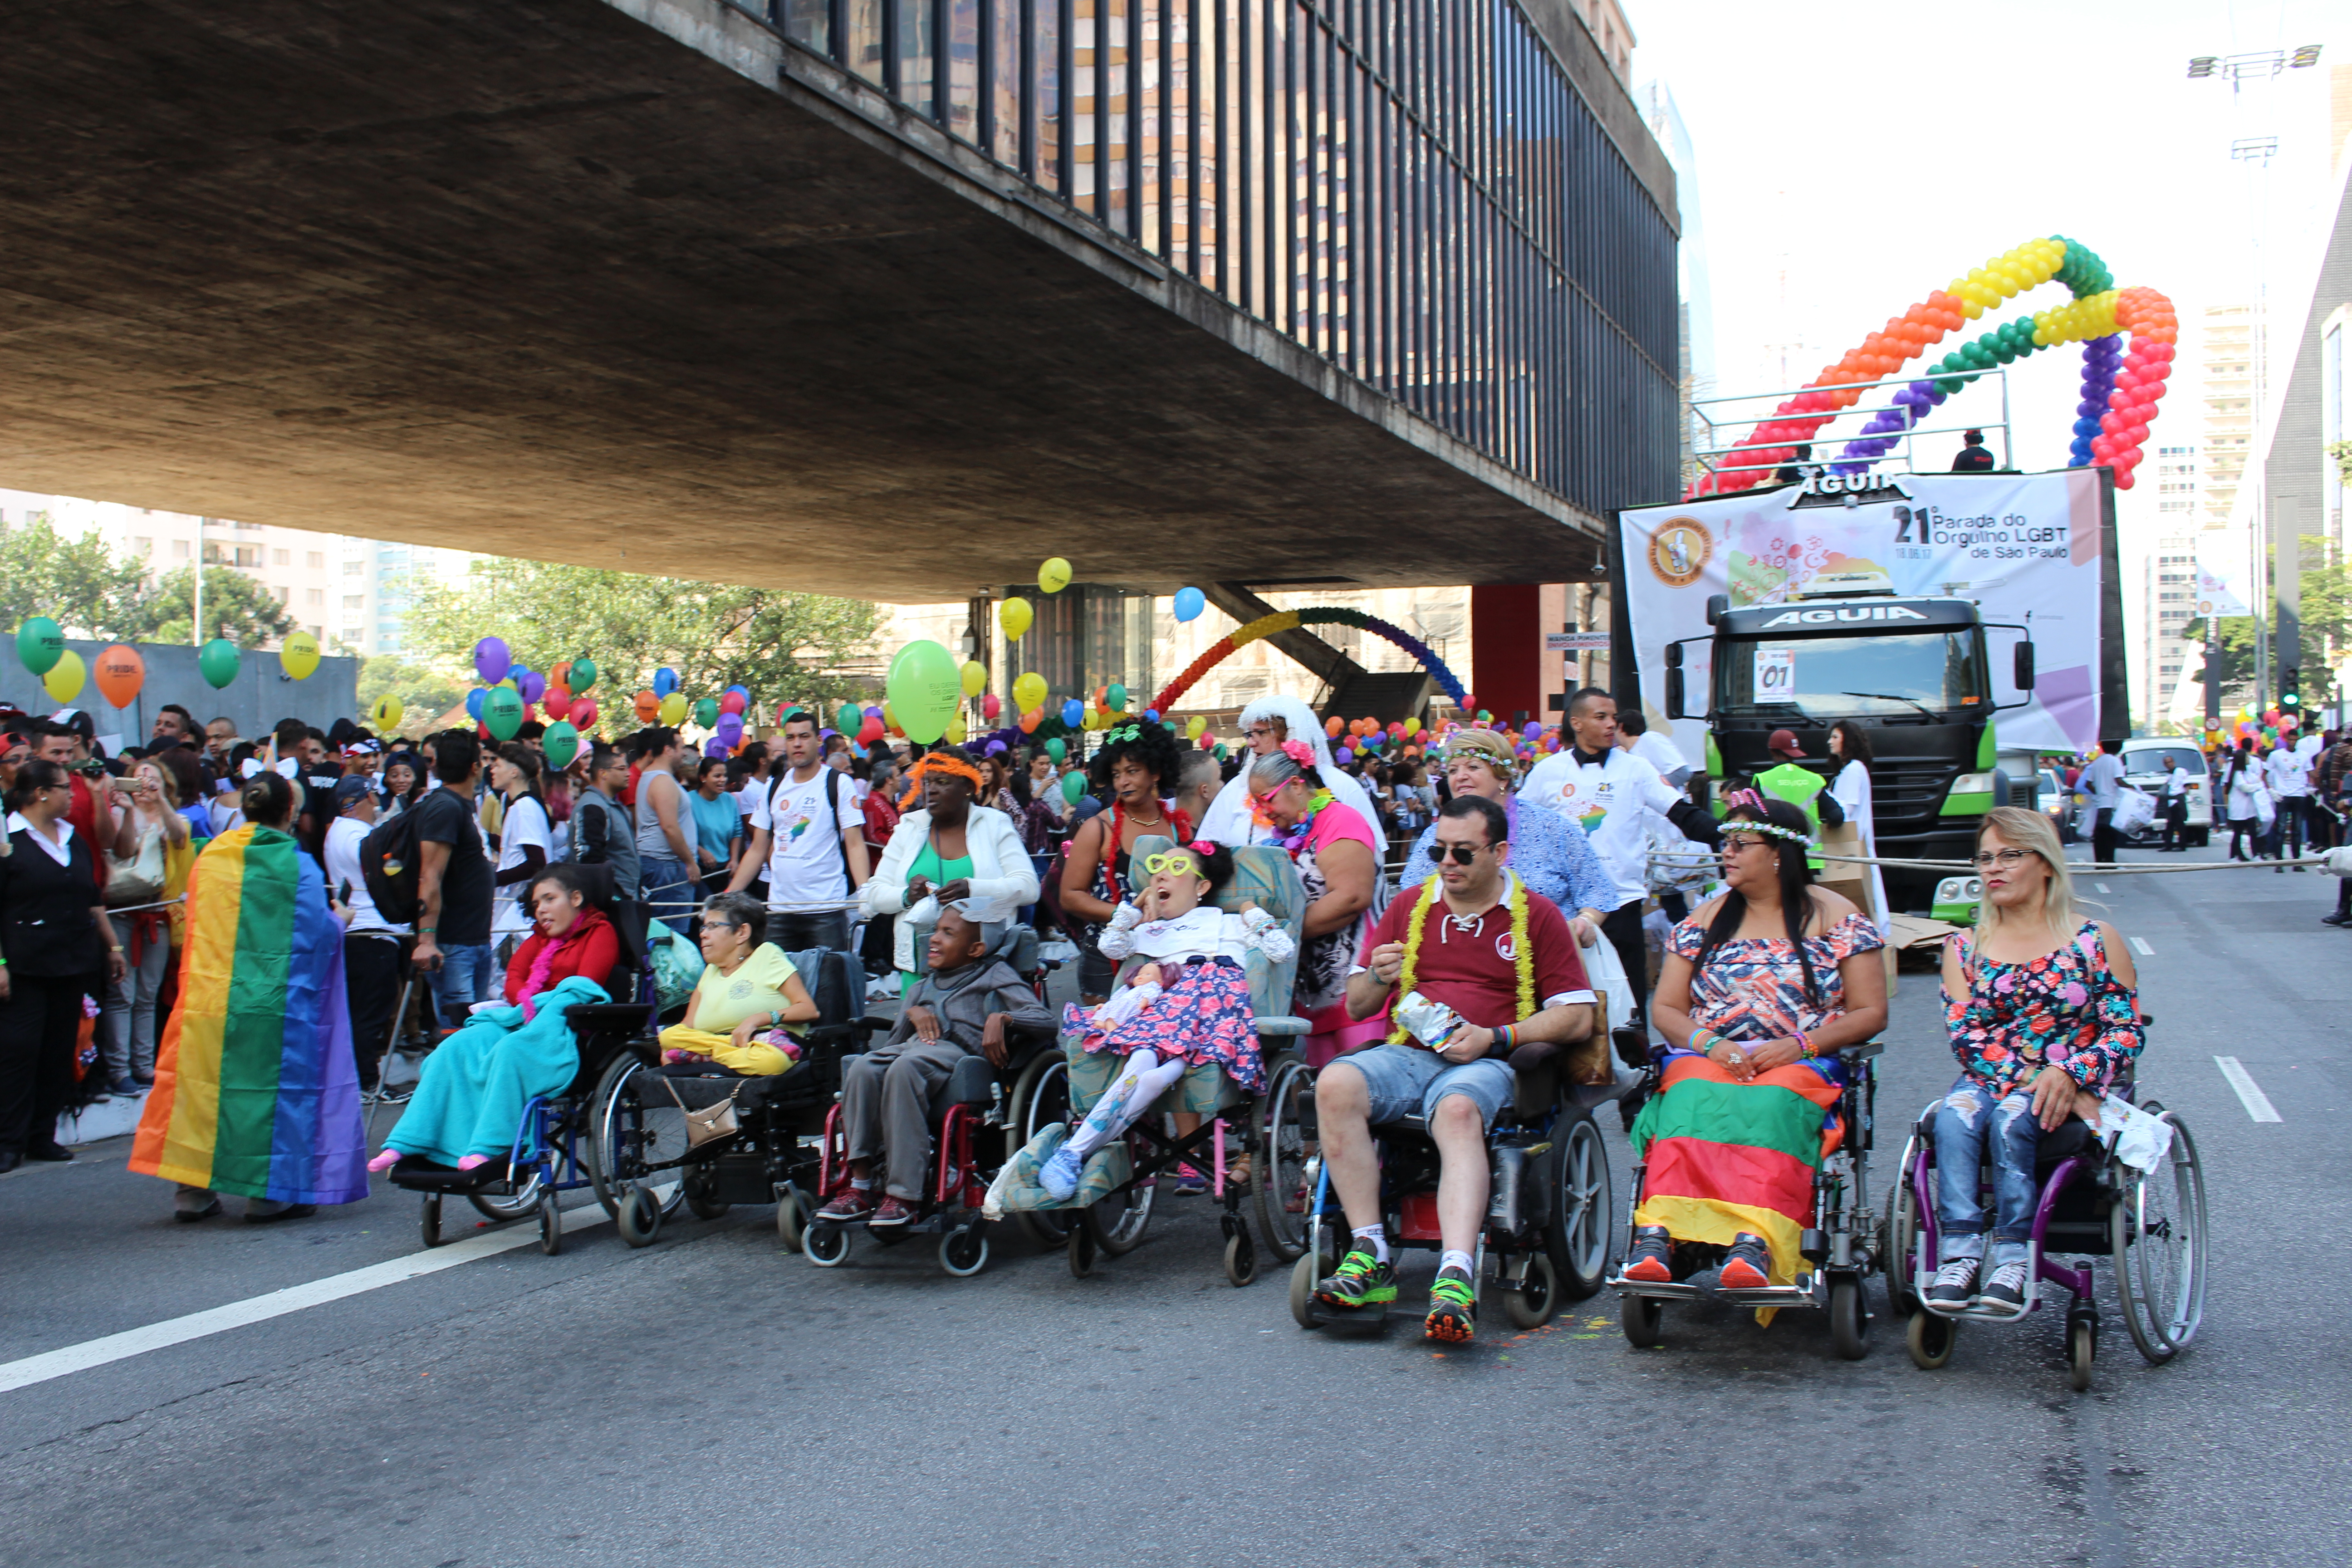 Pessoas em cadeira de rodas, com mobilidade reduzida e demais deficiências reunidas na Avenida Paulista na Parada do Orgulho LGBT. Há diversos balões coloridos.